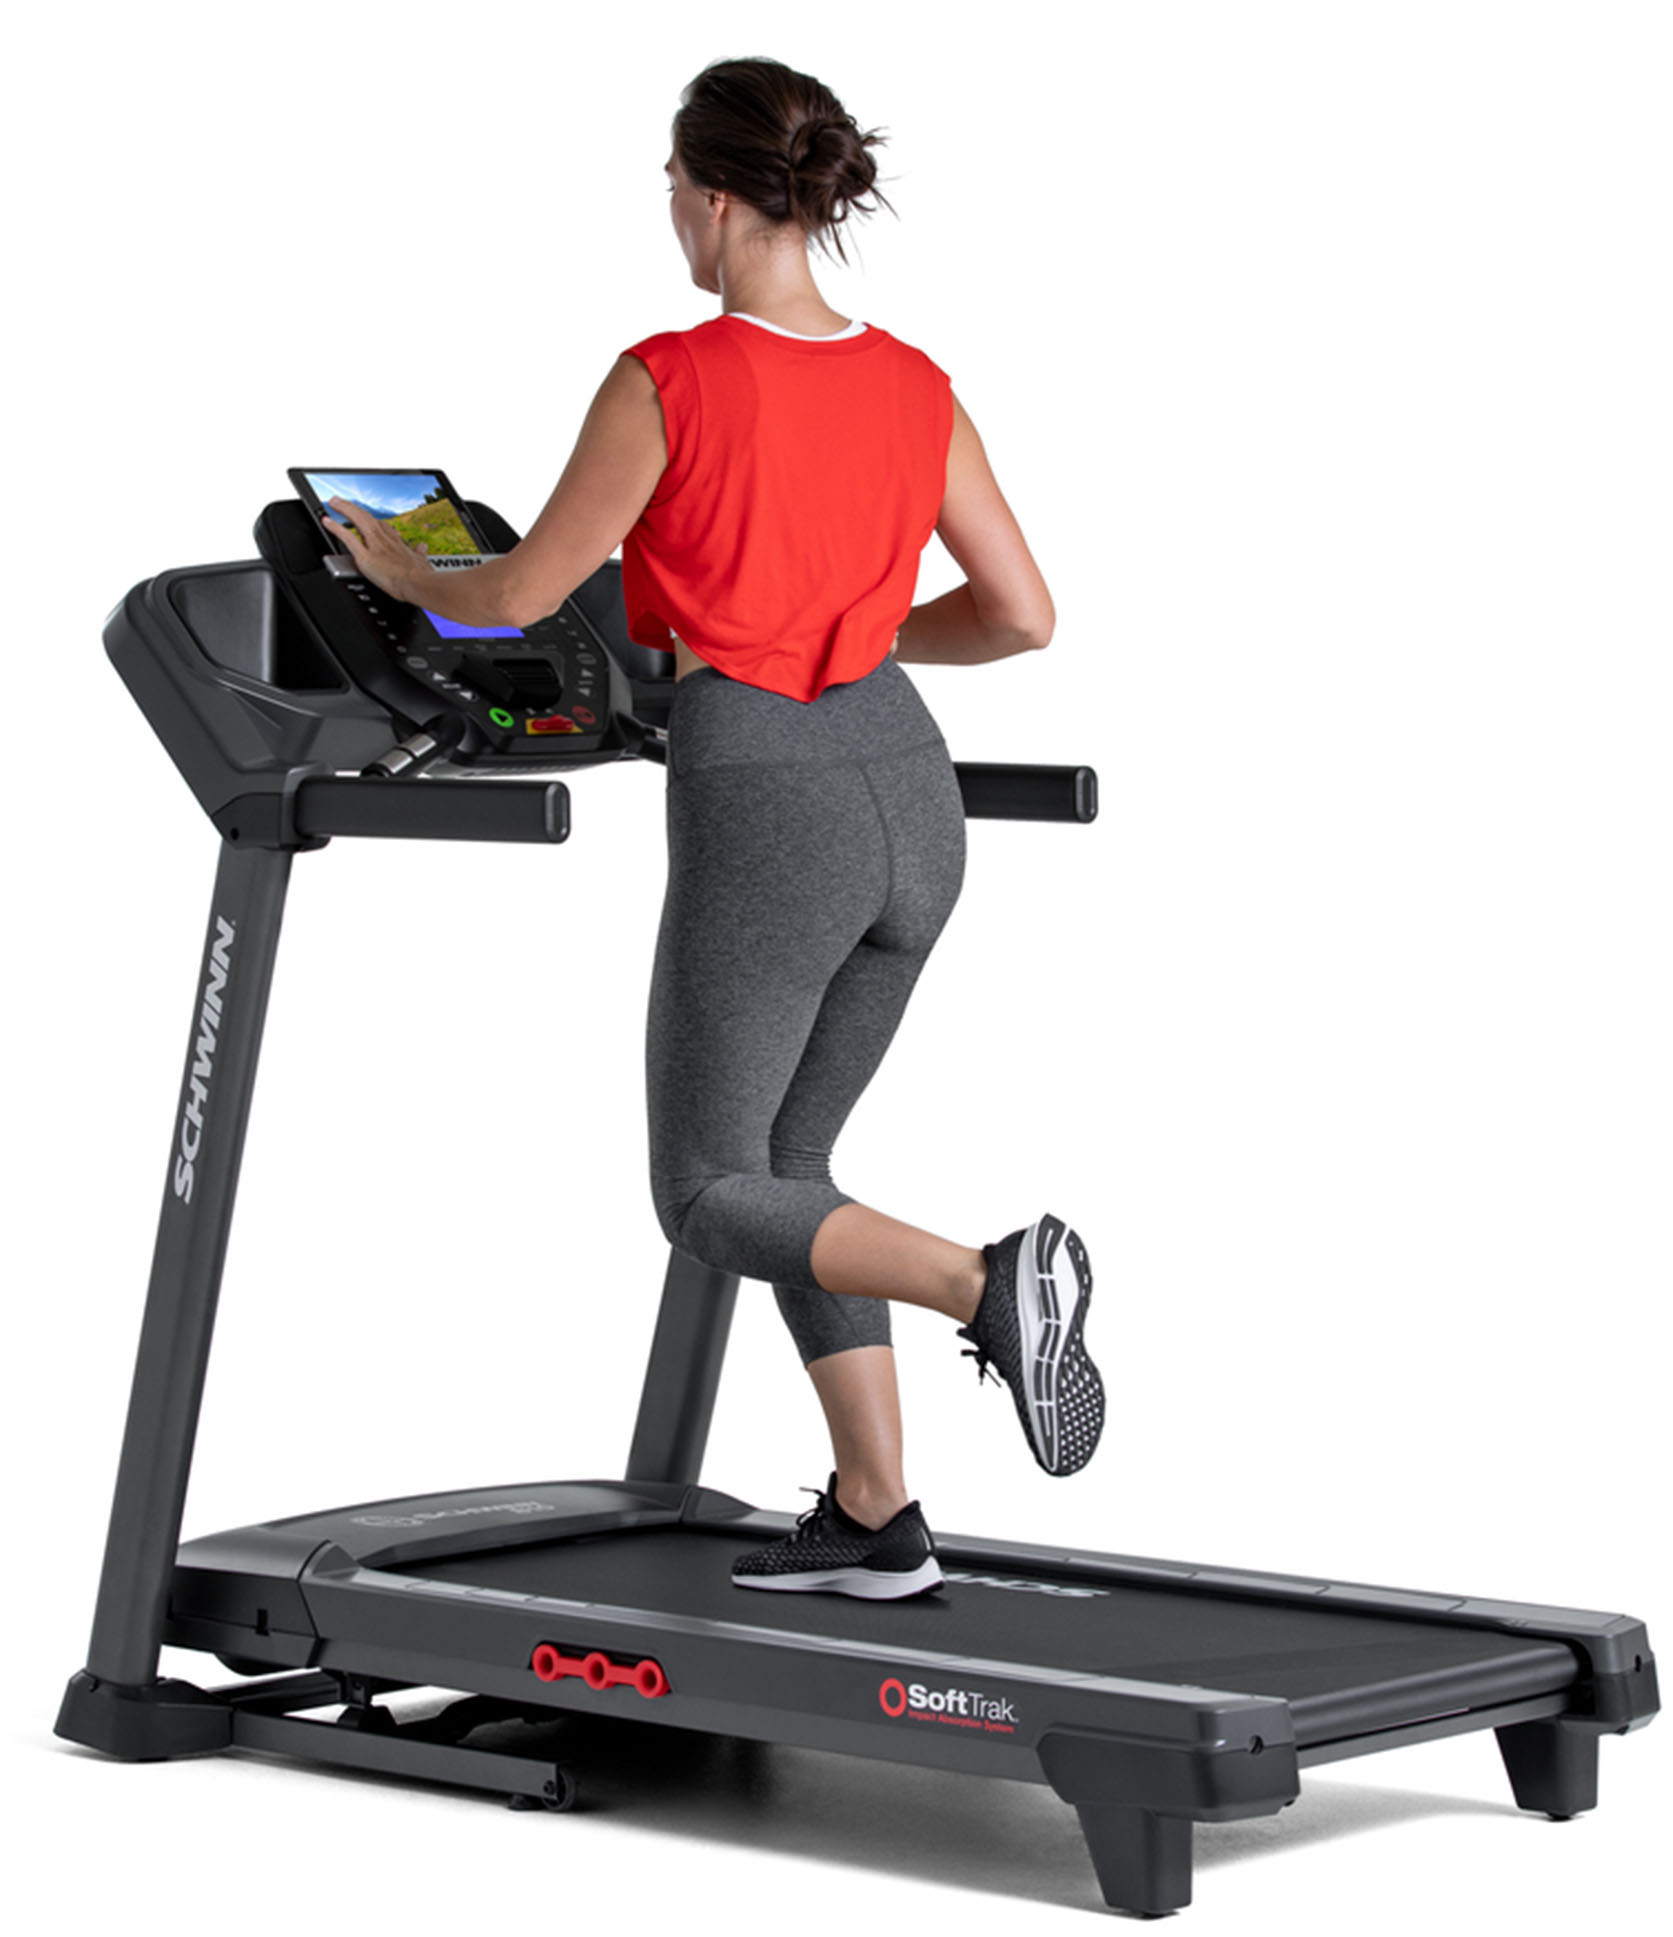 Schwinn - 810 Treadmill - Black